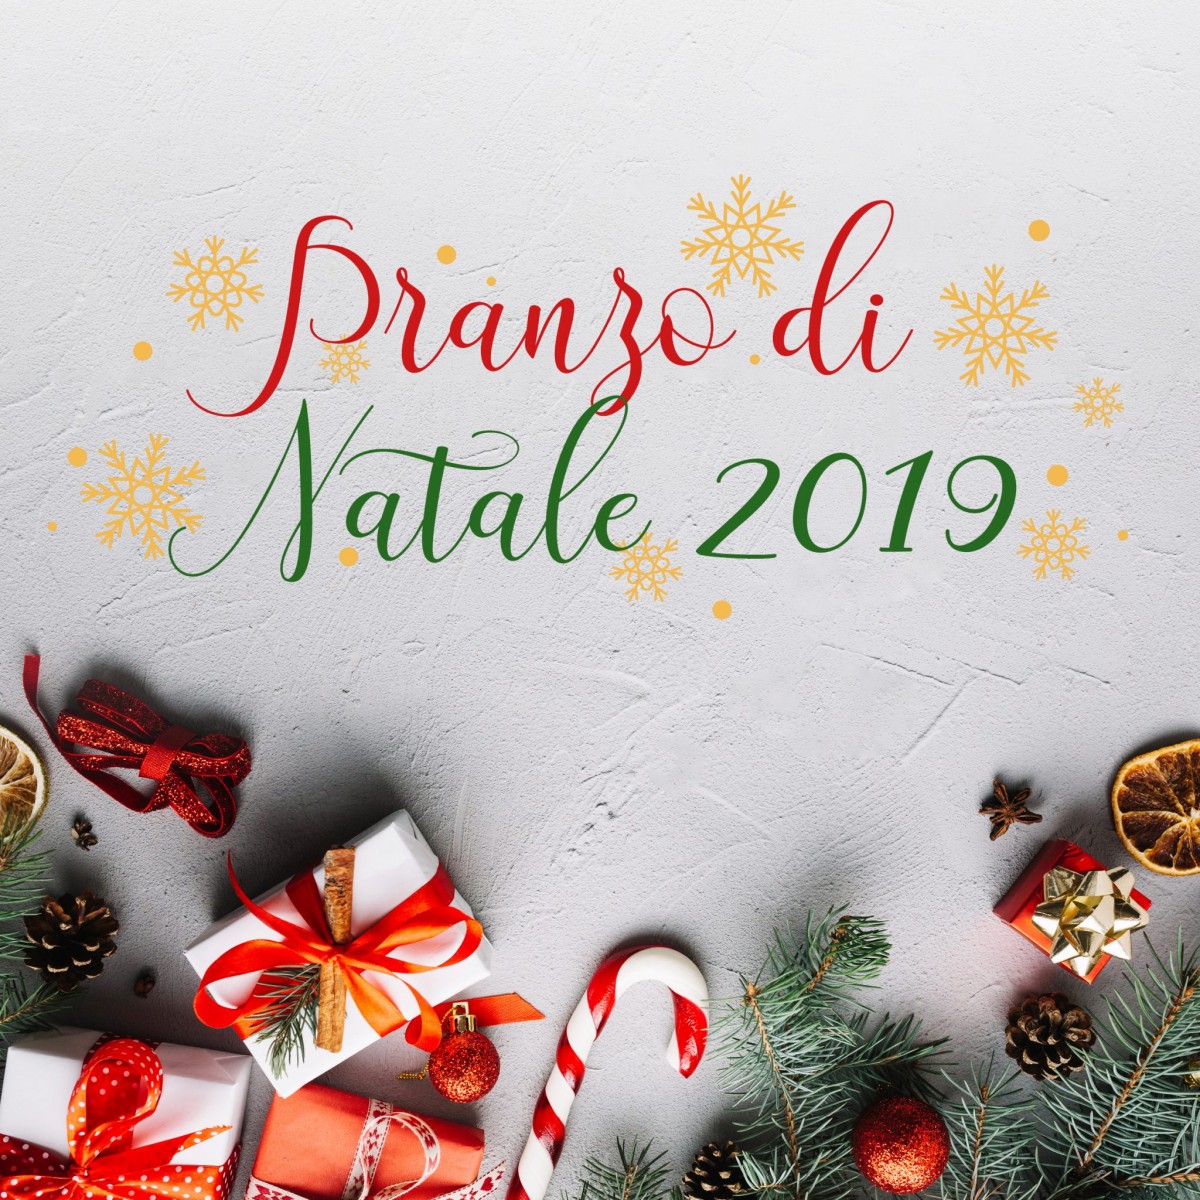 Siti Di Natale.Pranzo Di Natale 2019 Ristorante Pizzeria Bel Sit